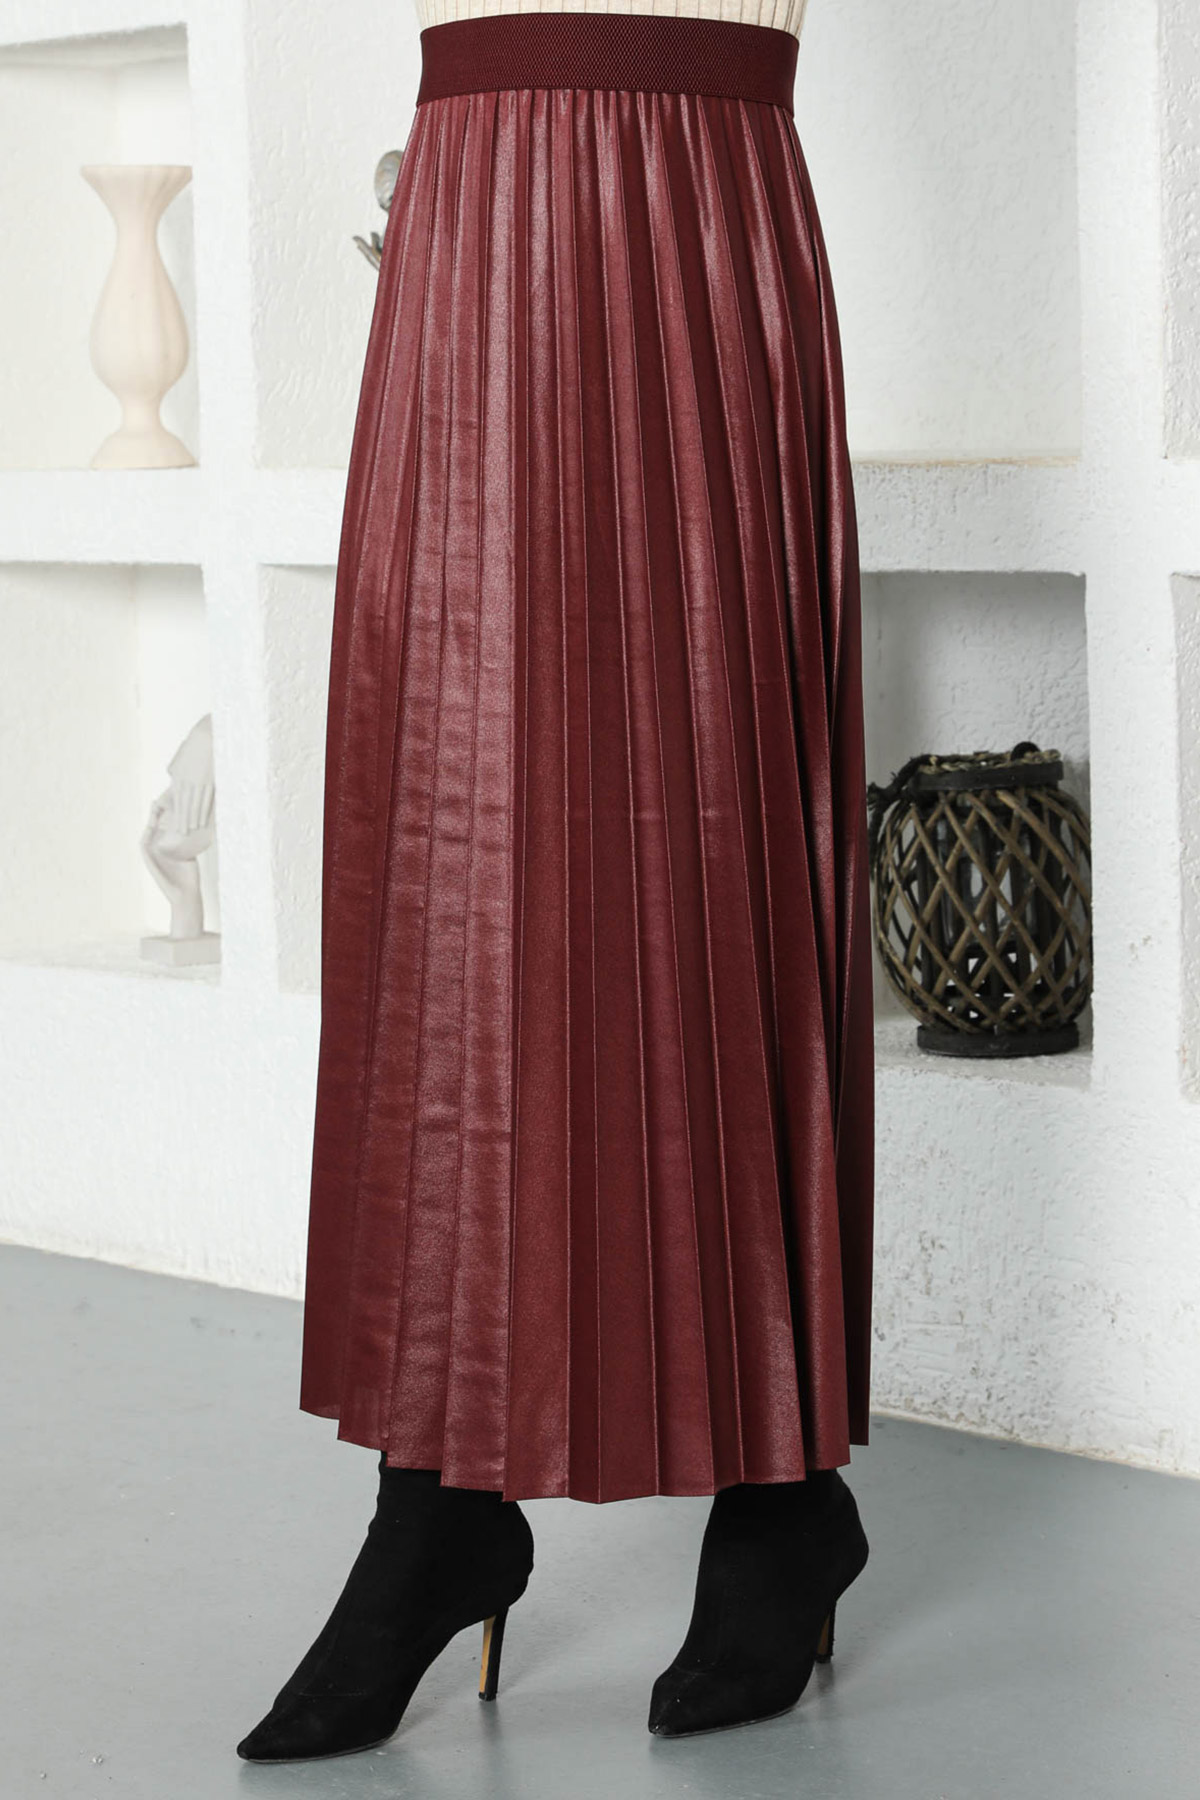 modest long denim skirts